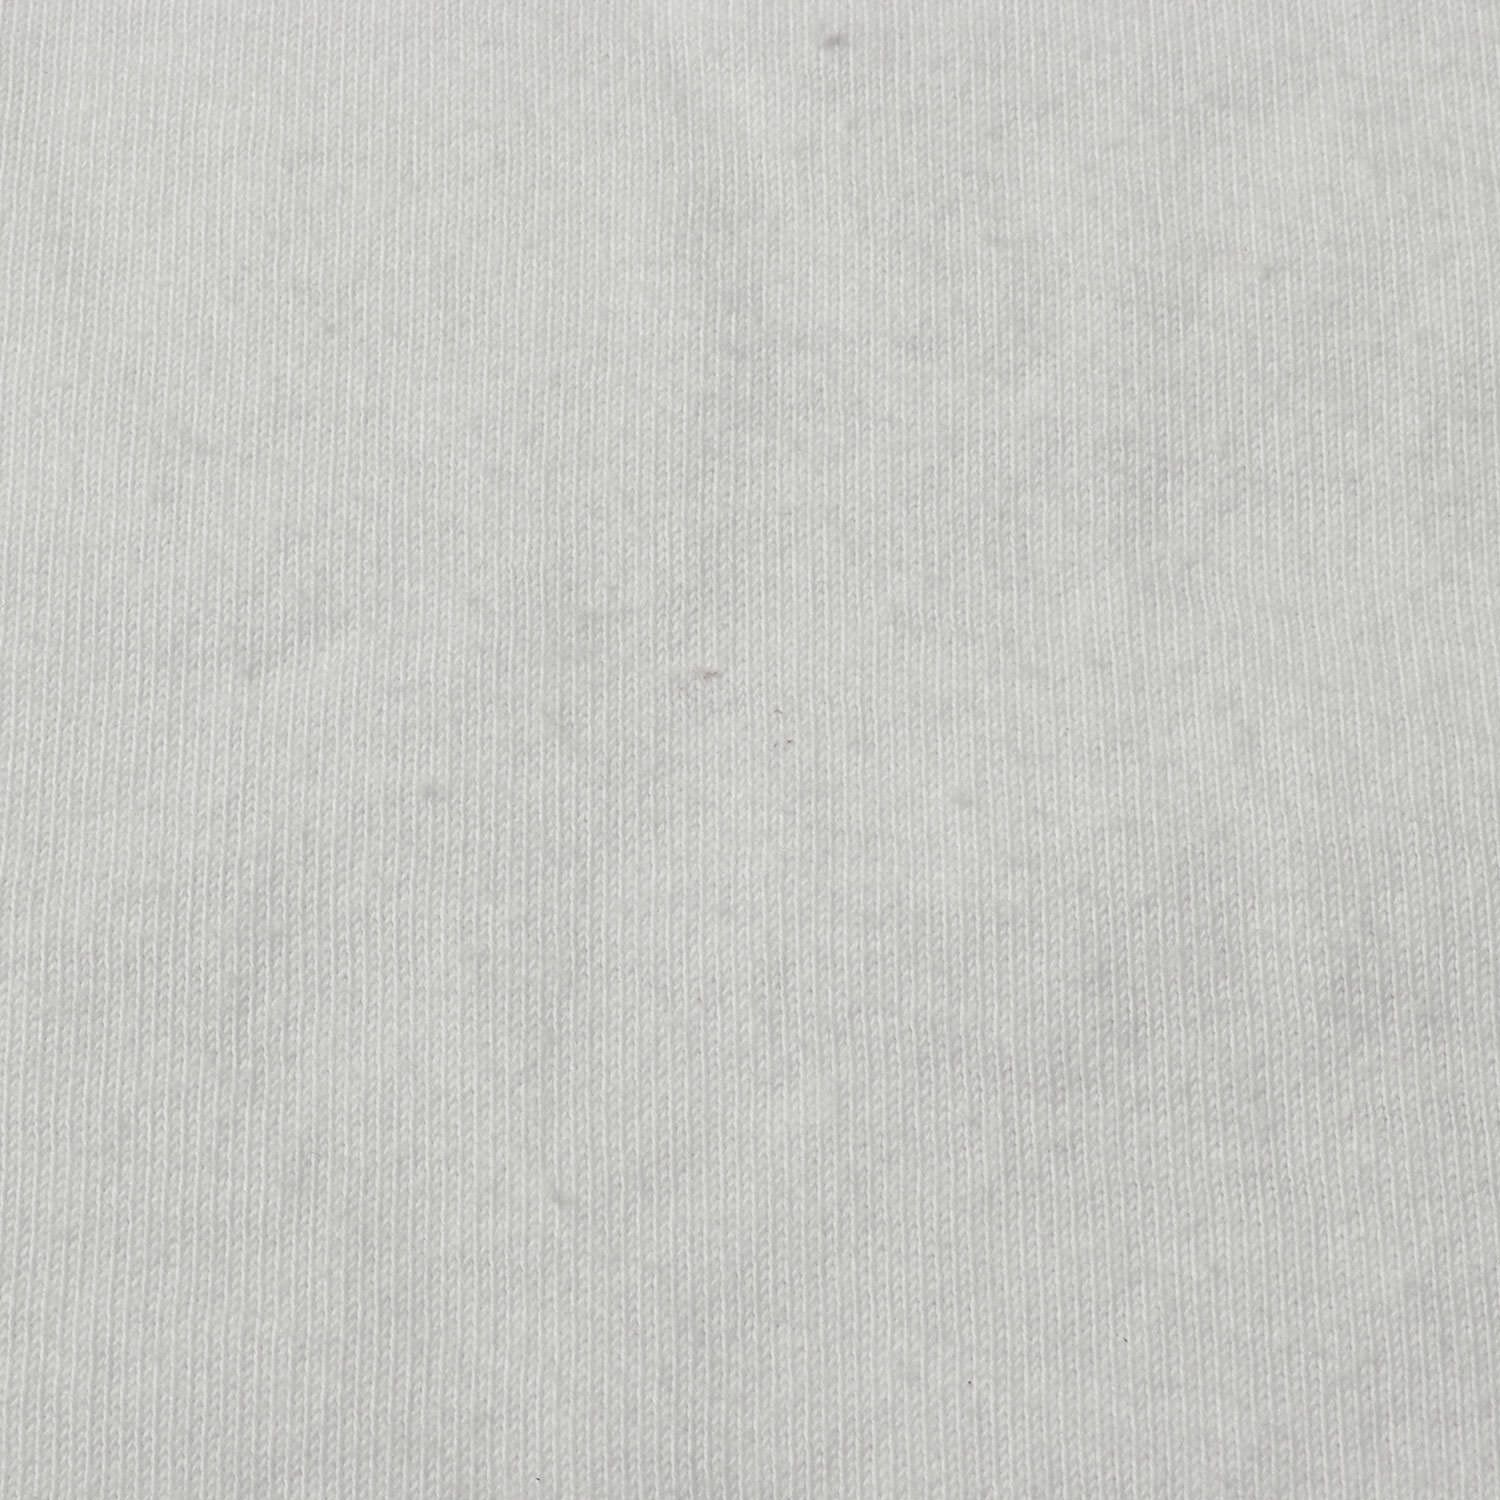 STUSSY ステューシー Tシャツ サイズ:S Patta パタ コラボロゴ クルーネック 19AW ホワイト 白 トップス カットソー 半袖  ストリート ブランド